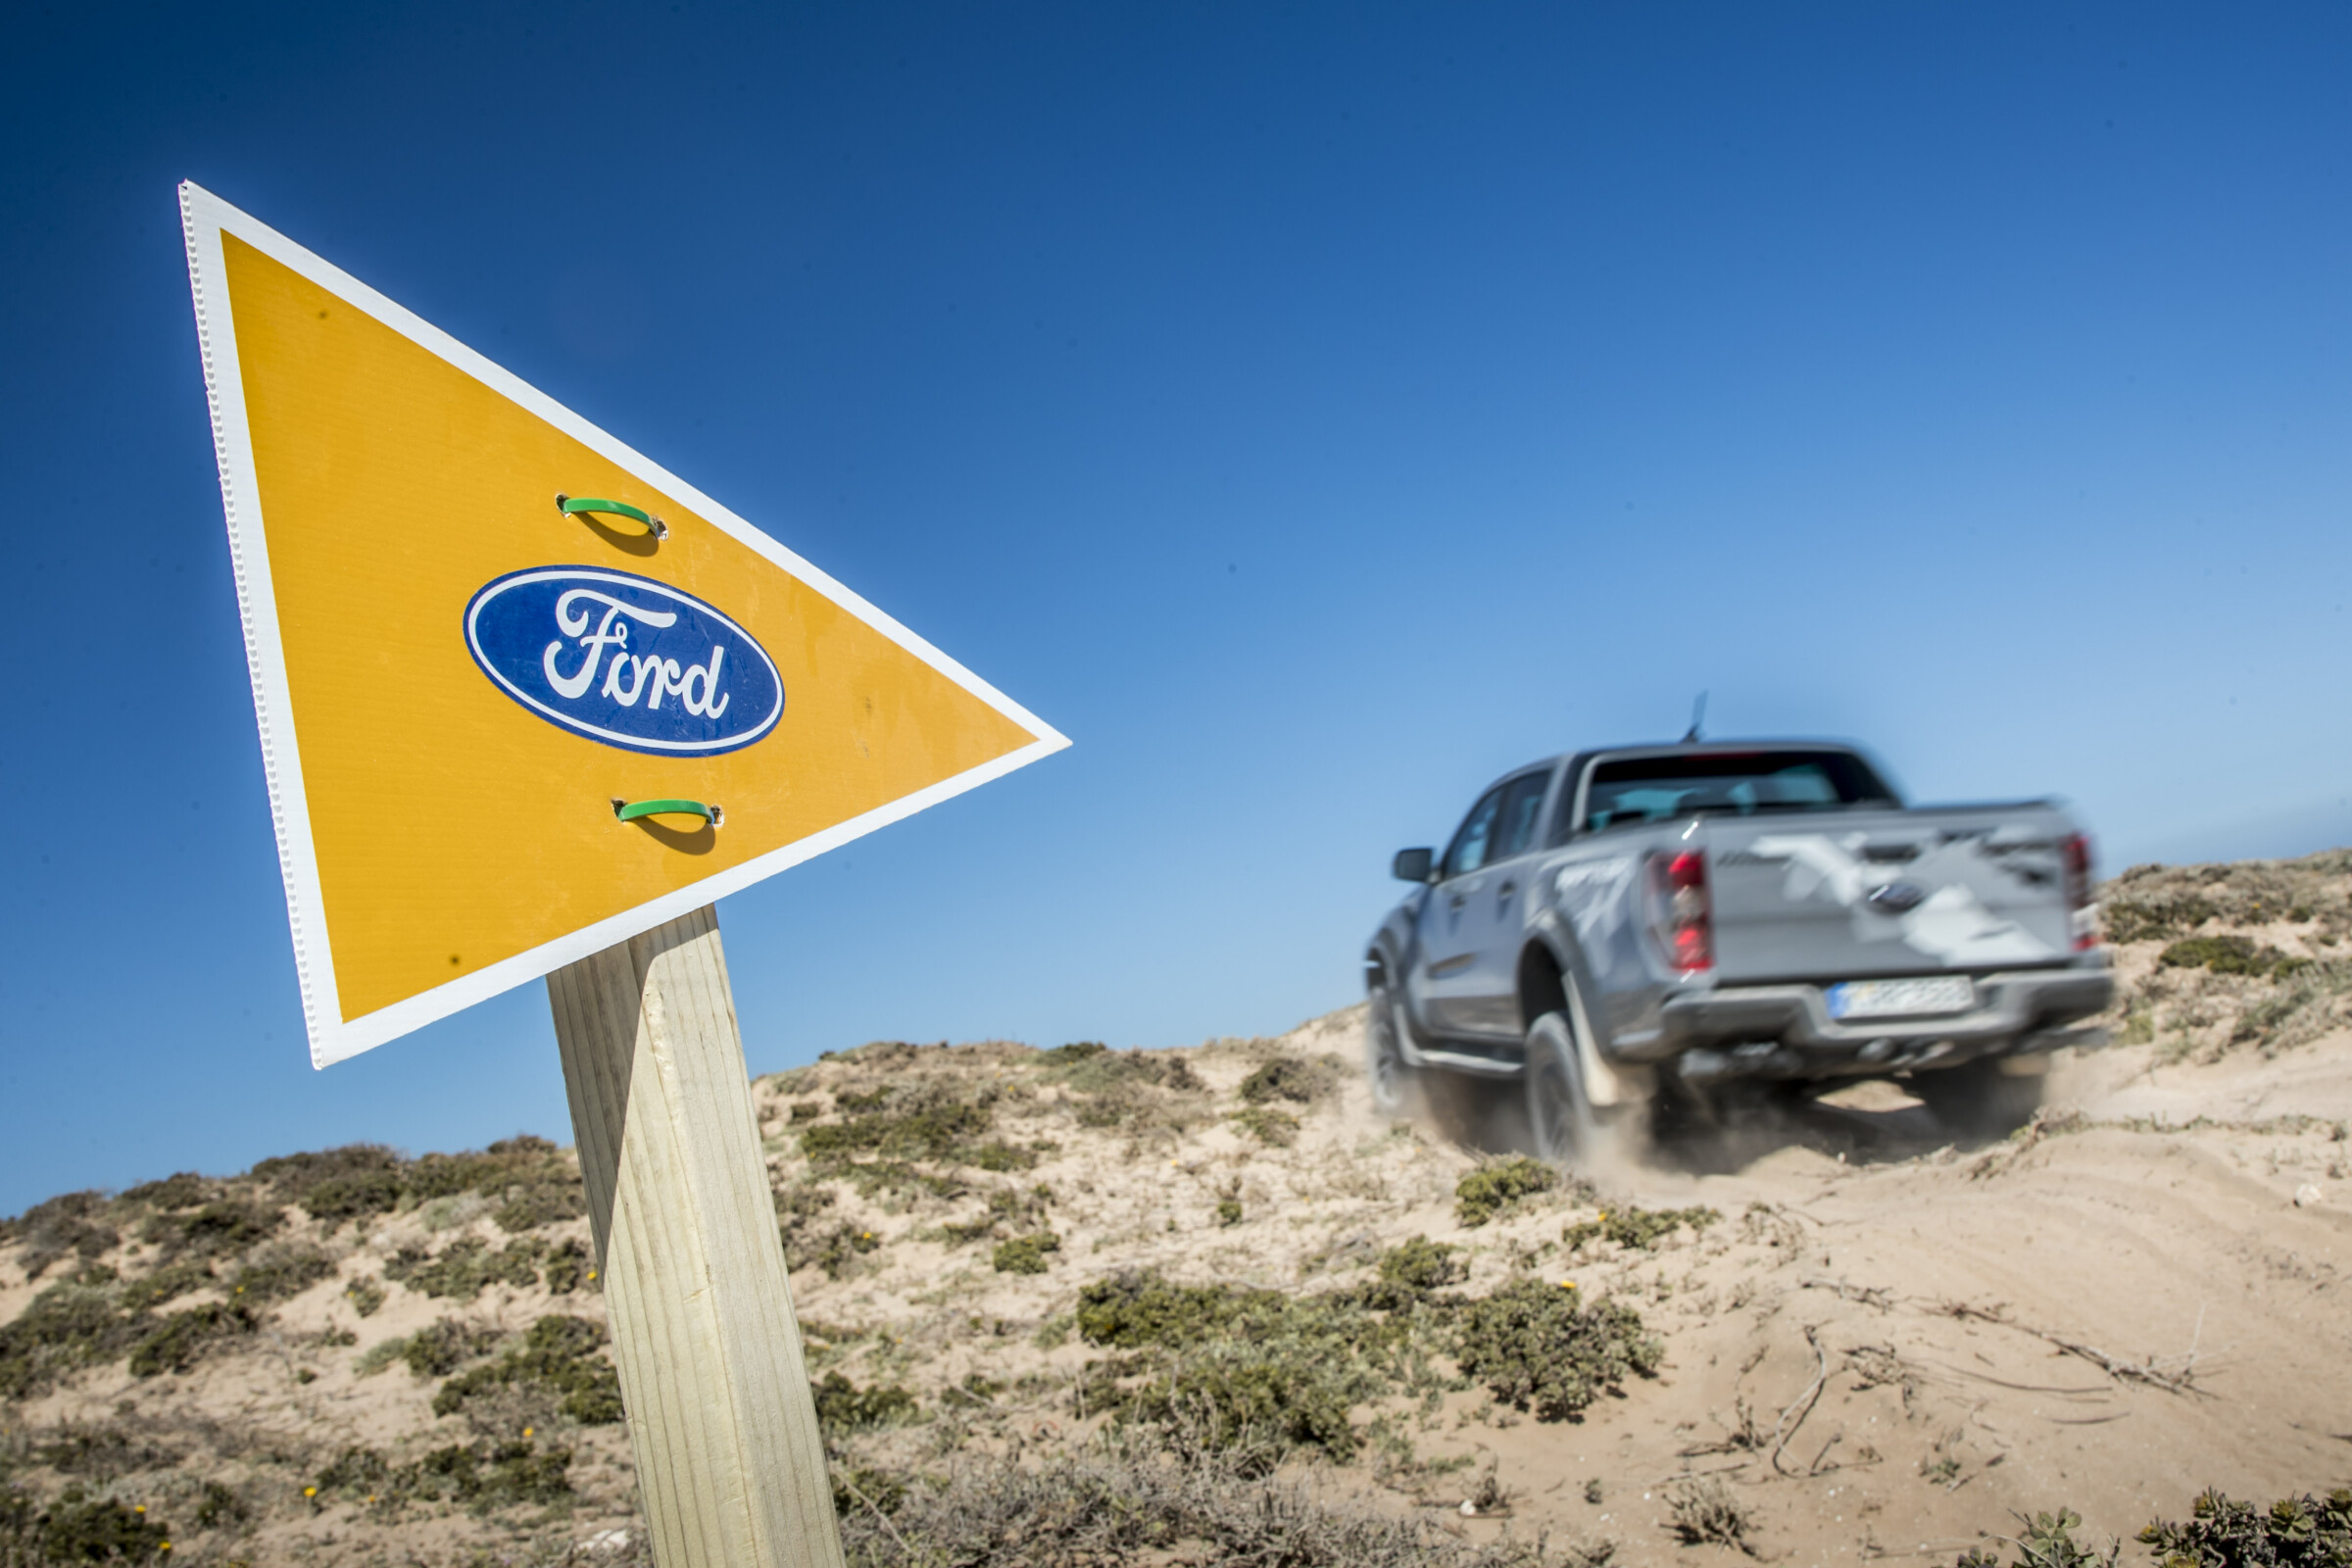 Spot TV pour le nouveau pick-up Raptor de Ford au Ranch de Diabat